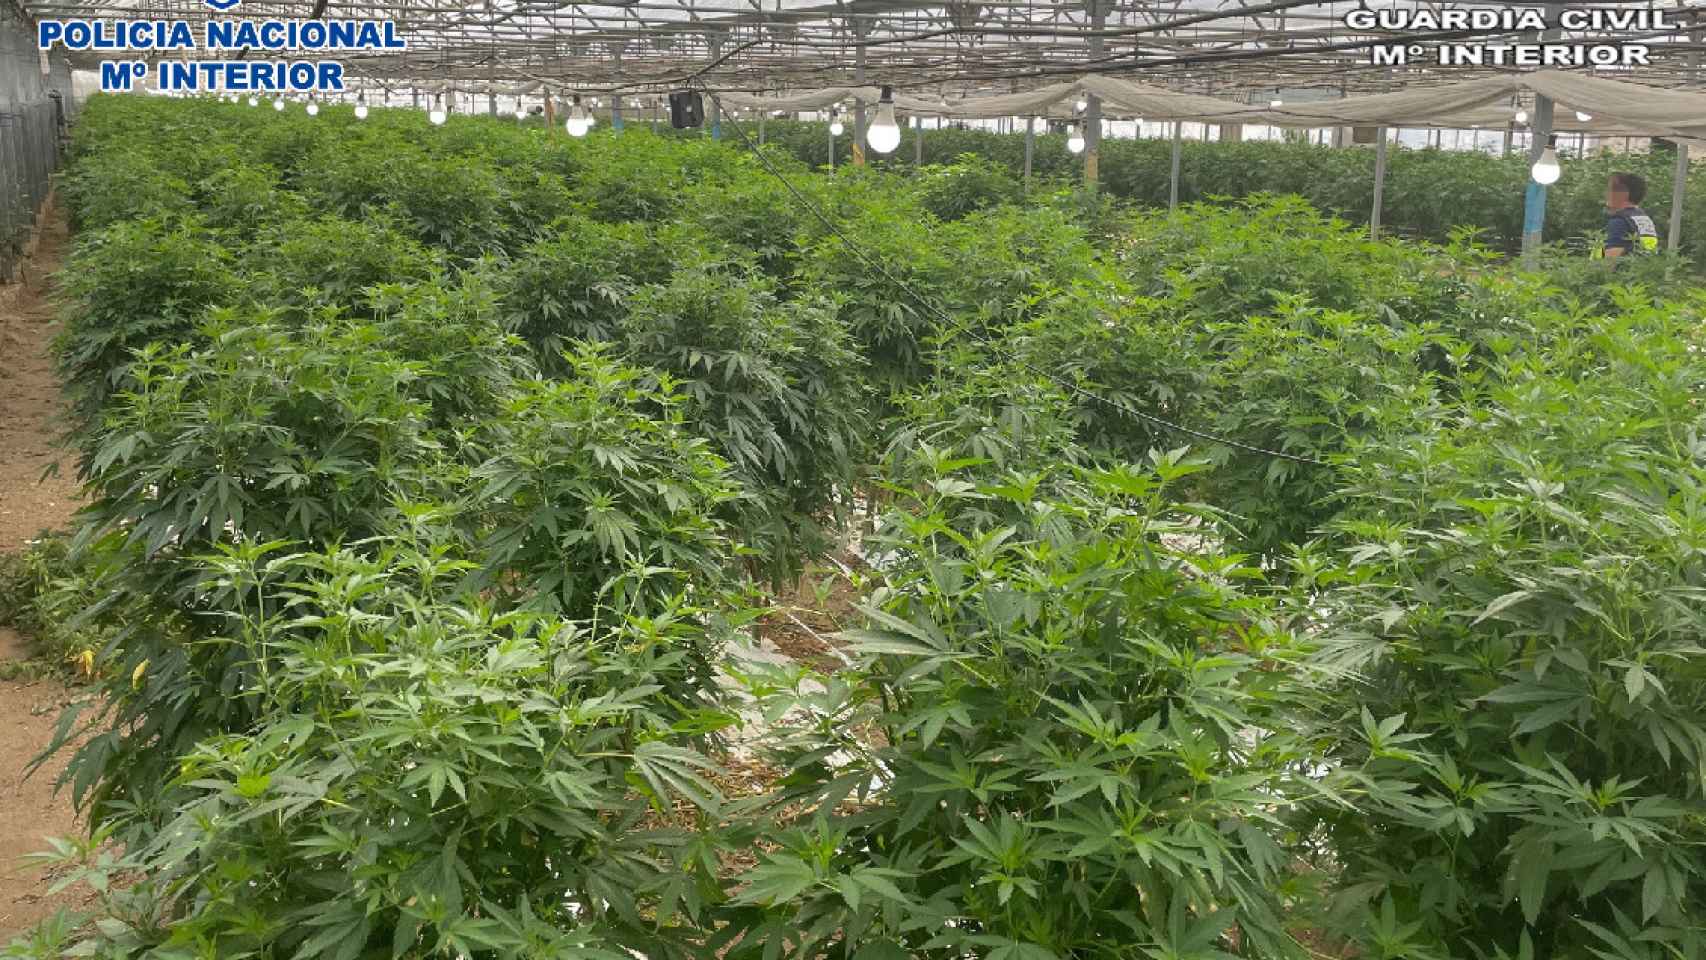 El mayor cultivo de marihuana de España en el que los agentes se han incautado de siete toneladas de droga / GUARDIA CIVIL